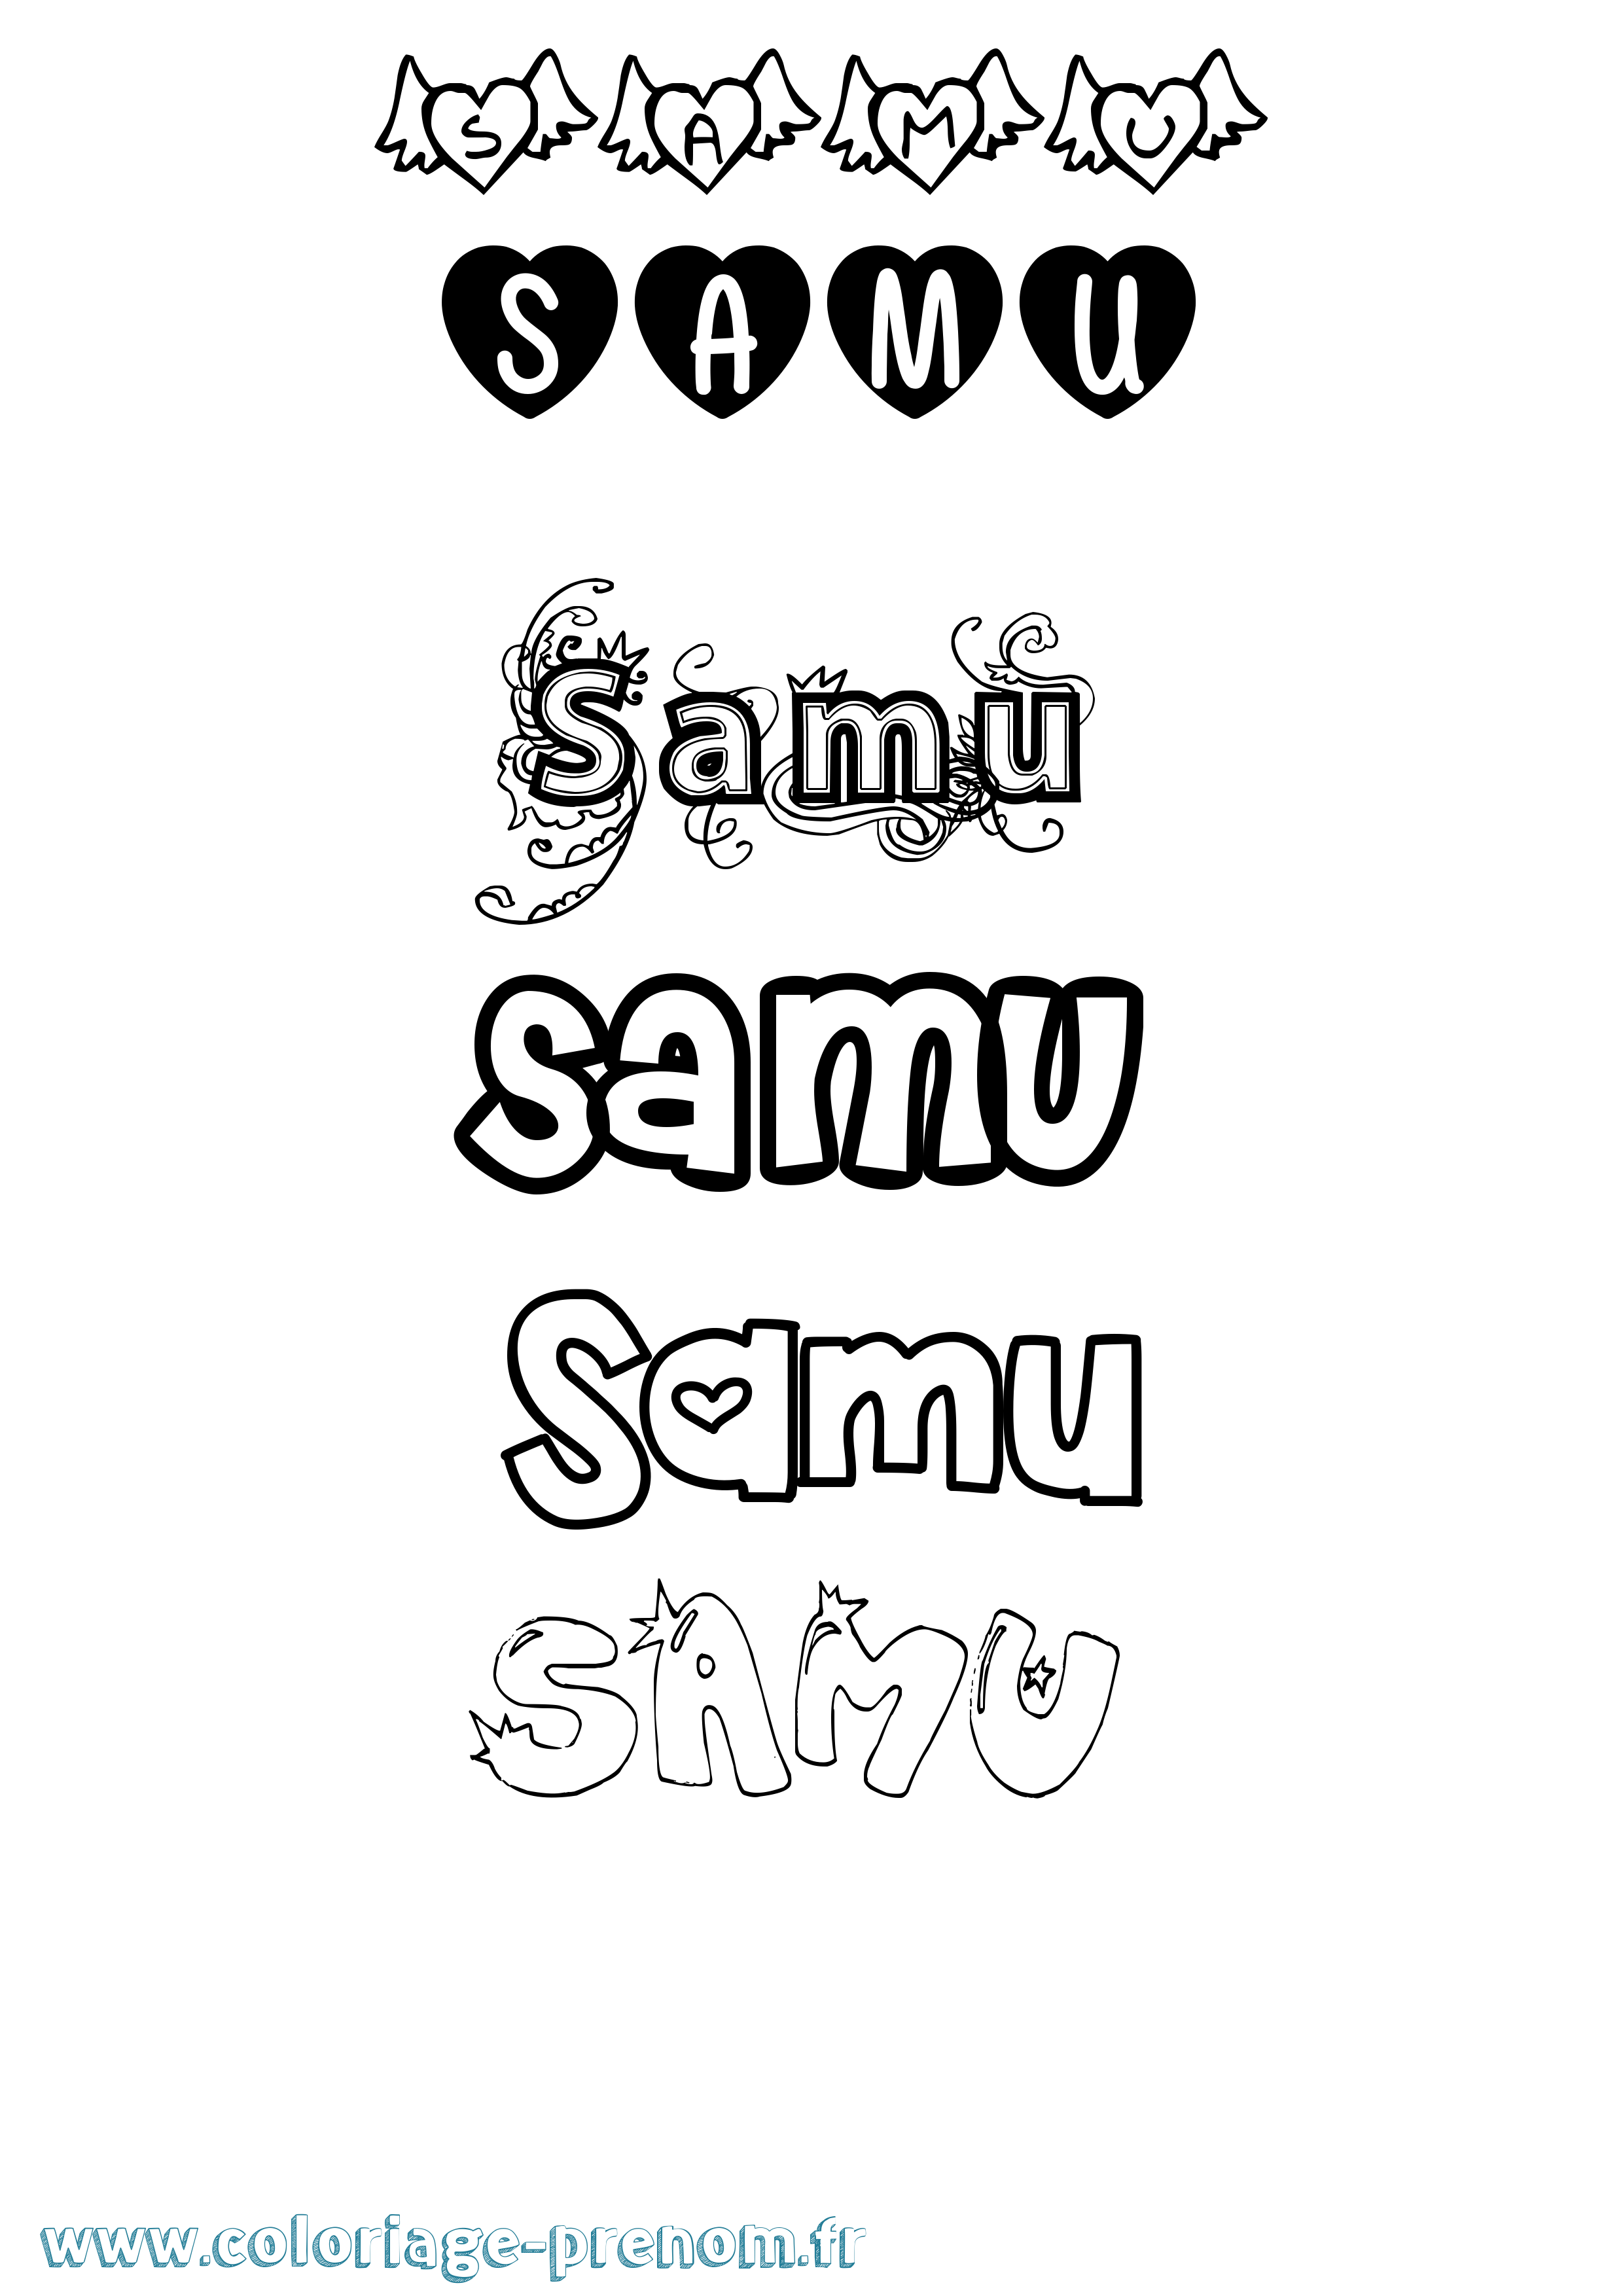 Coloriage prénom Samu Girly